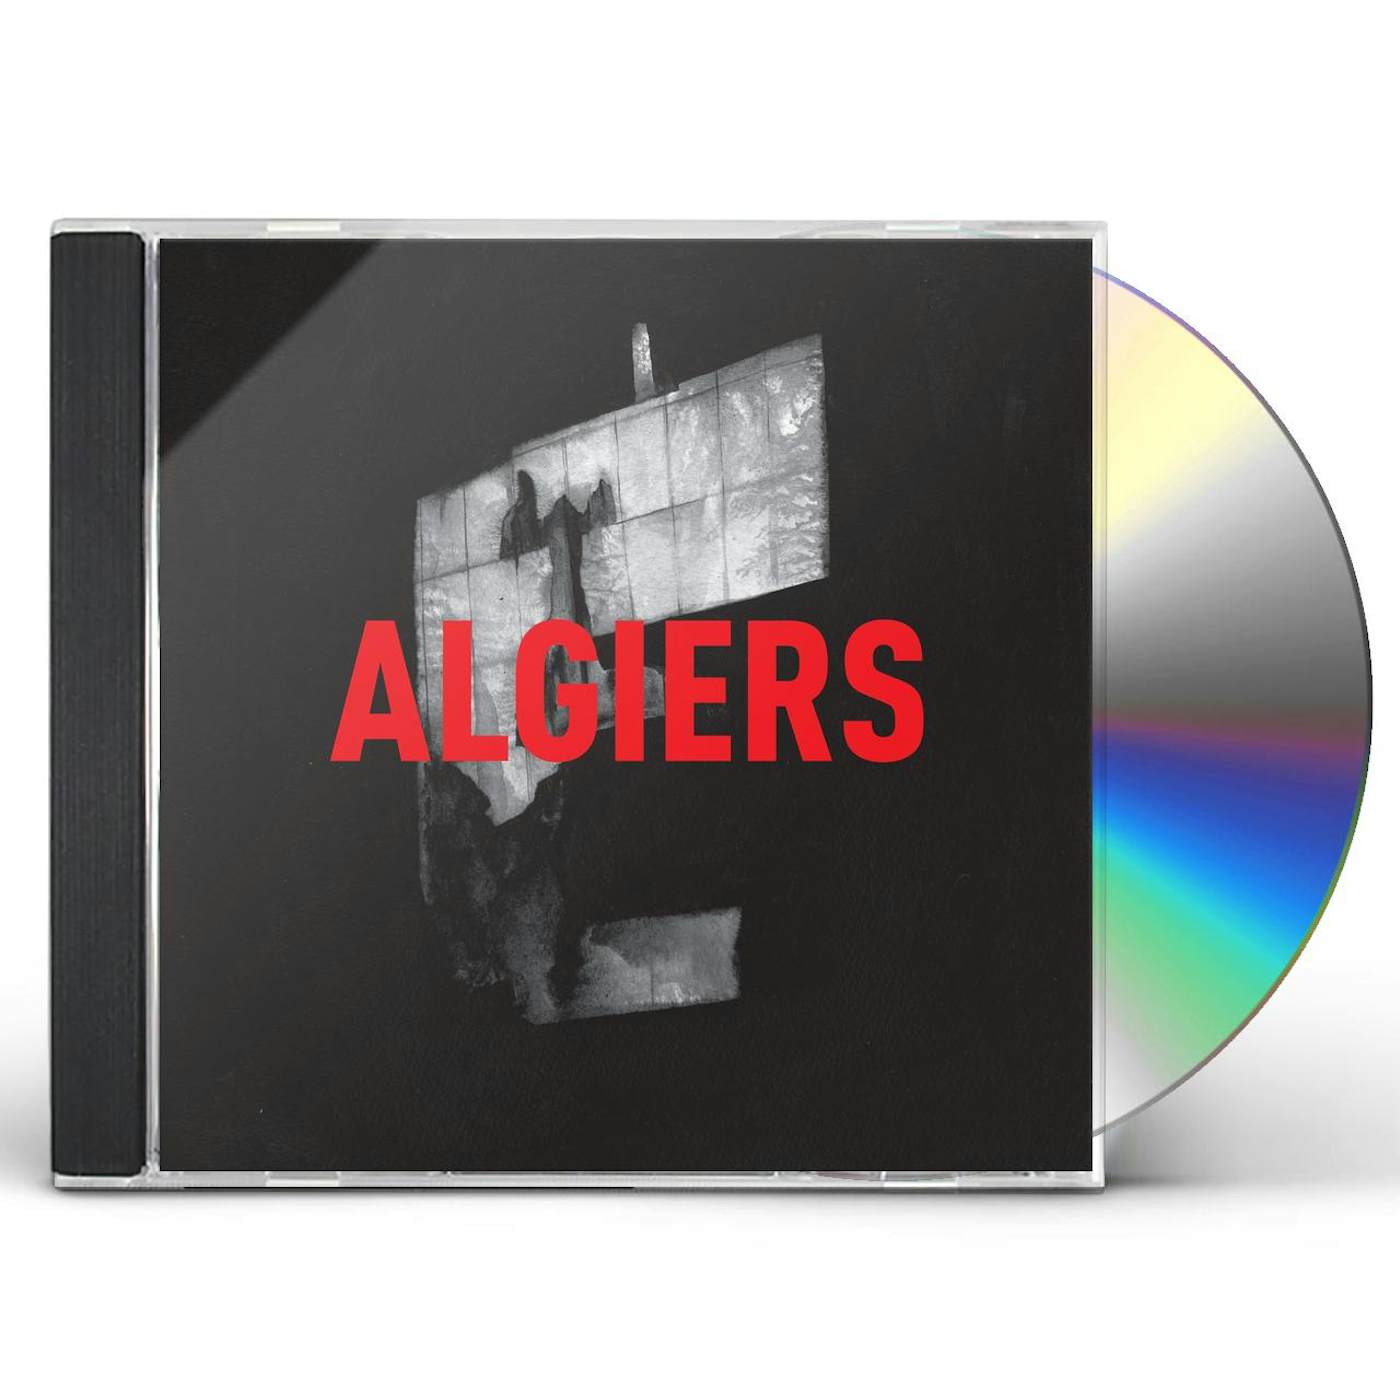 ALGIERS CD